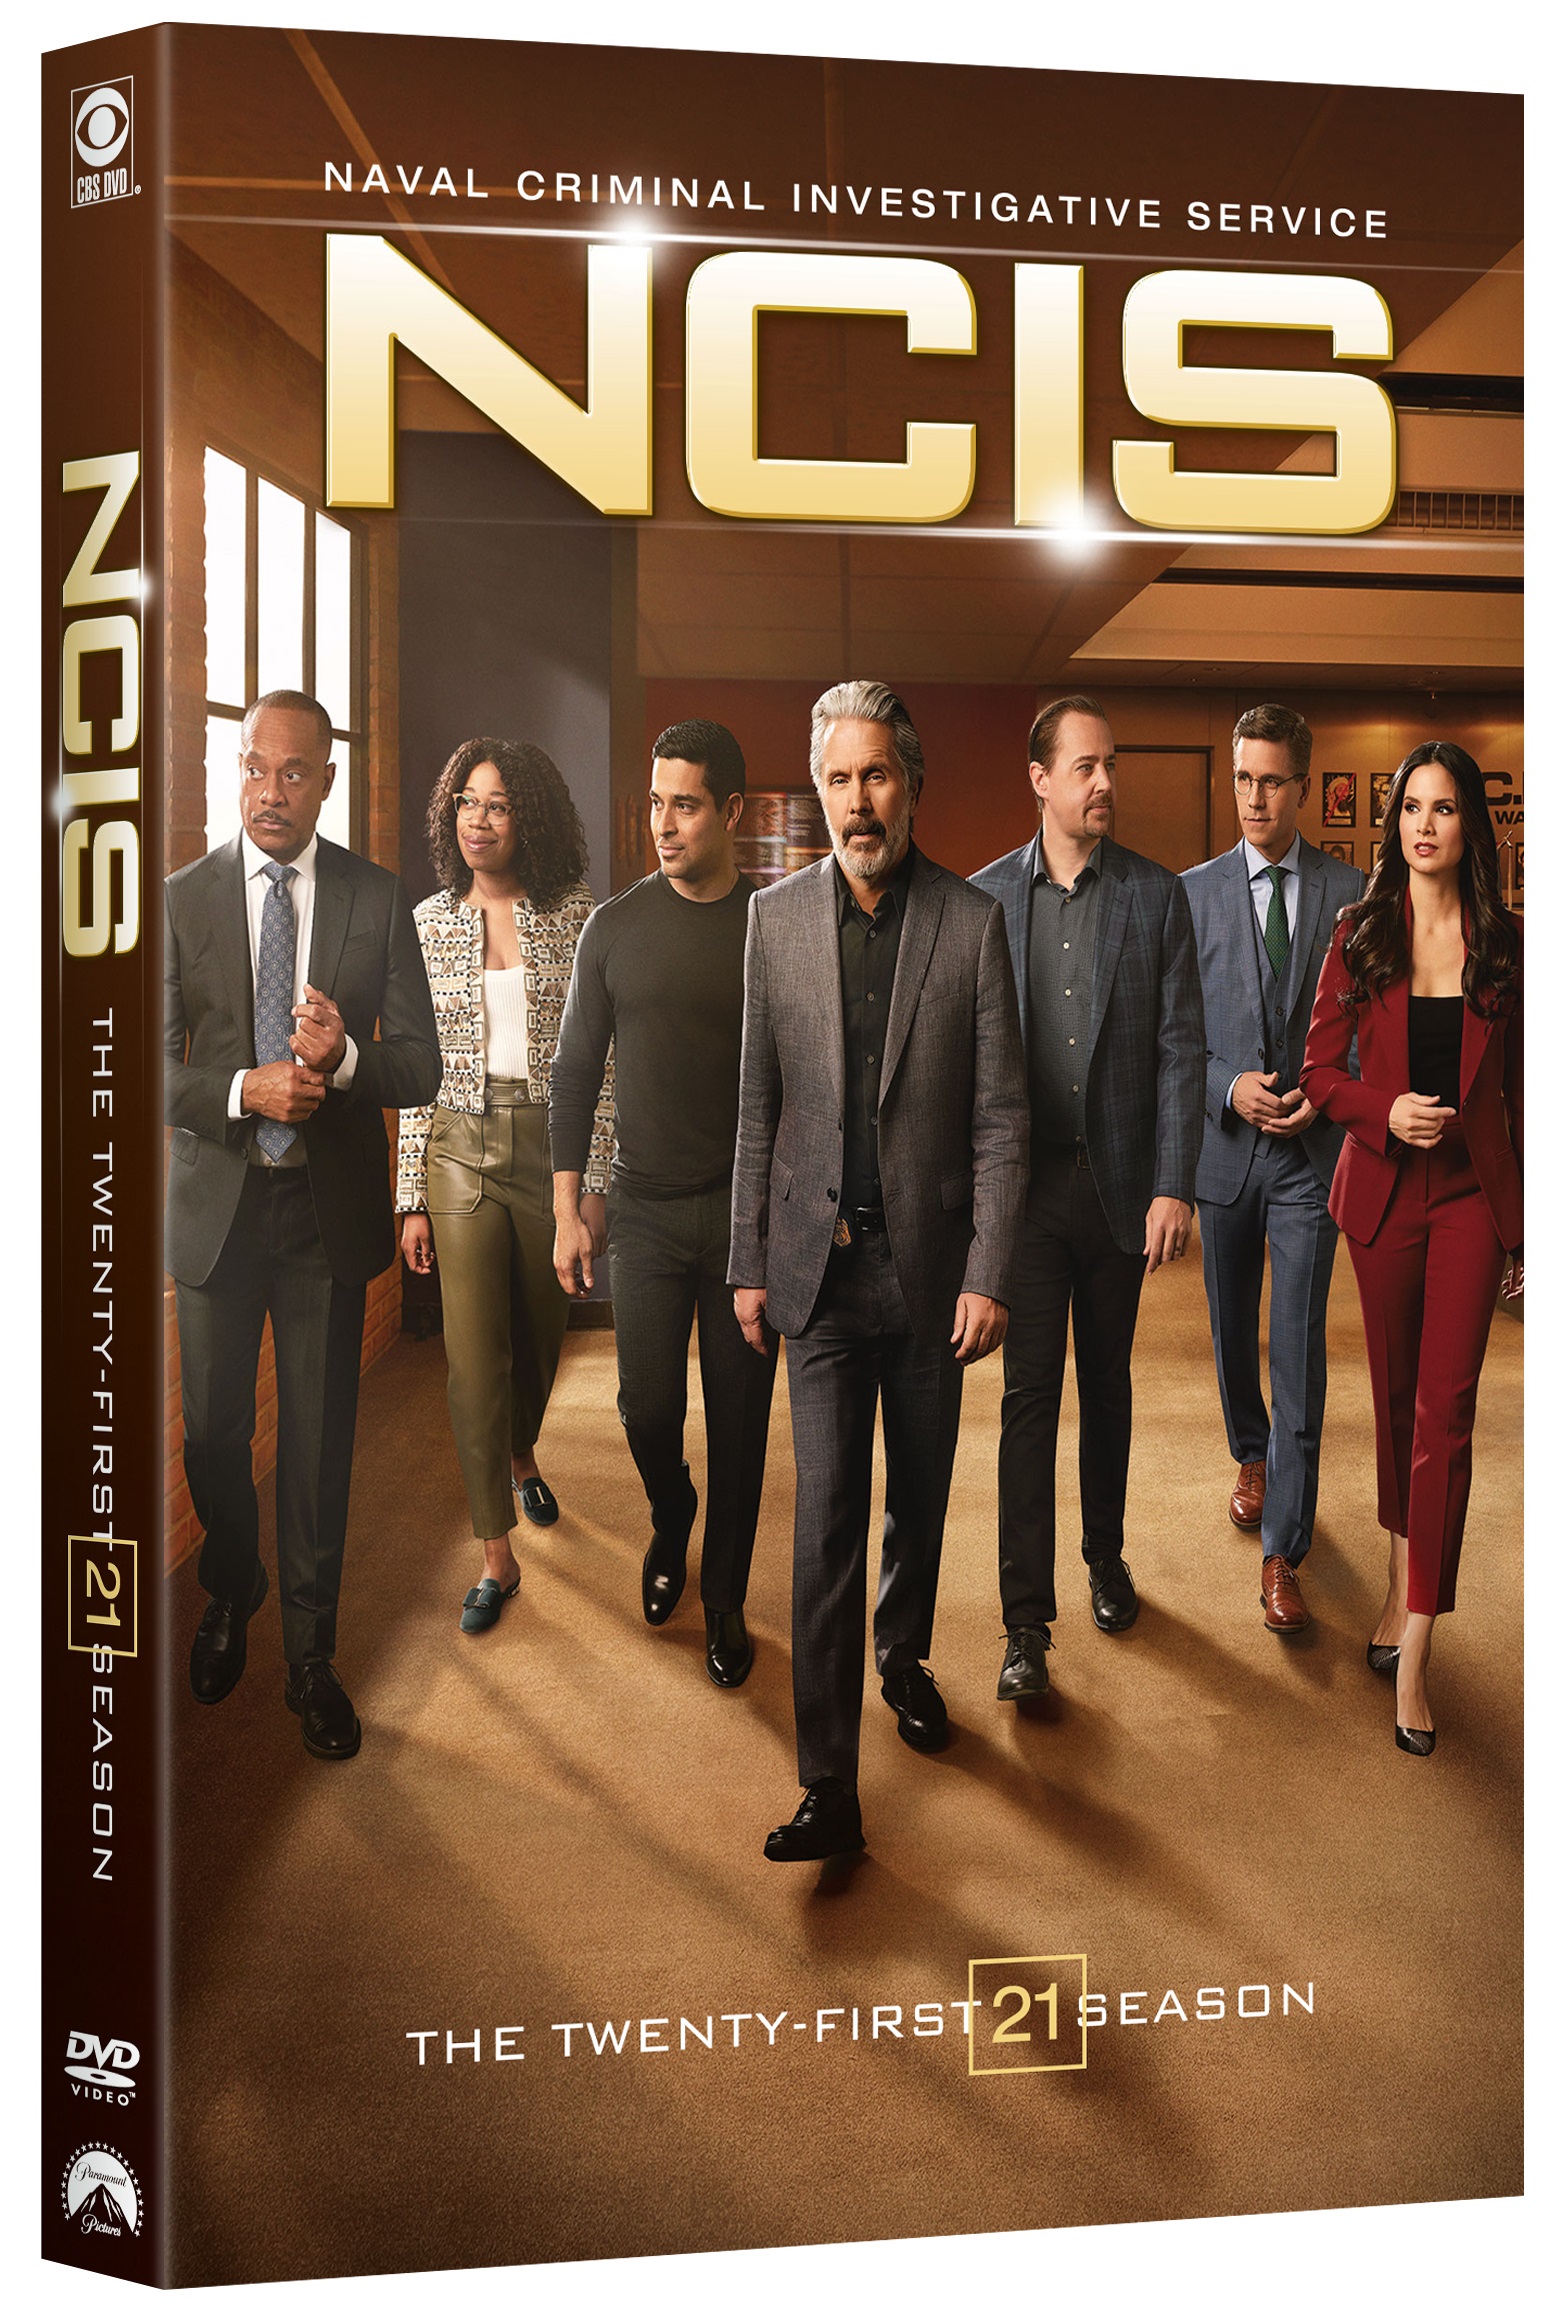 ncis season 21, dvd